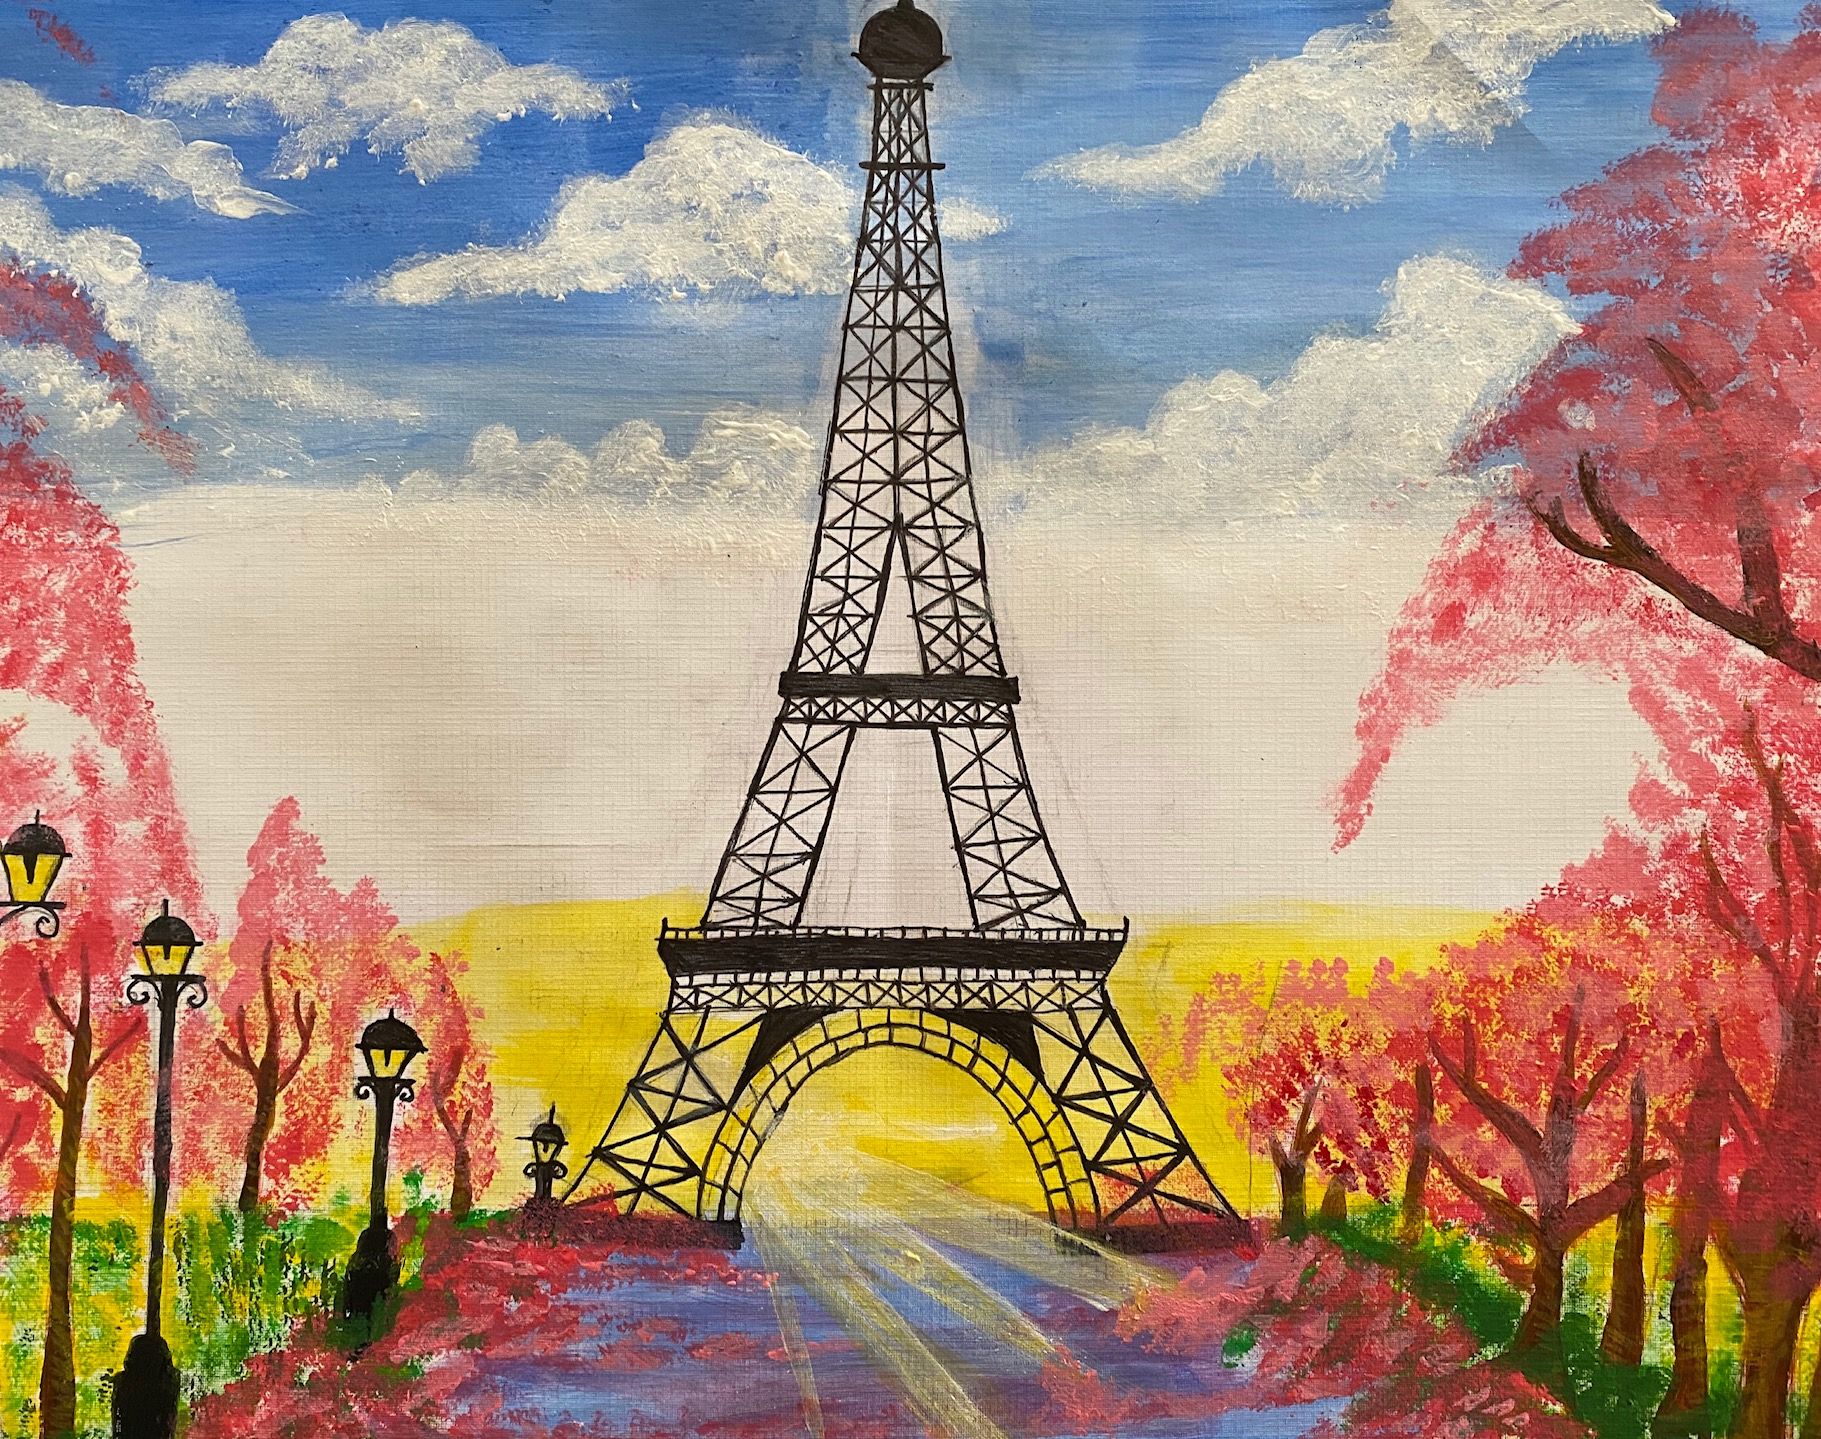 Student artwork - Springtime in Paris